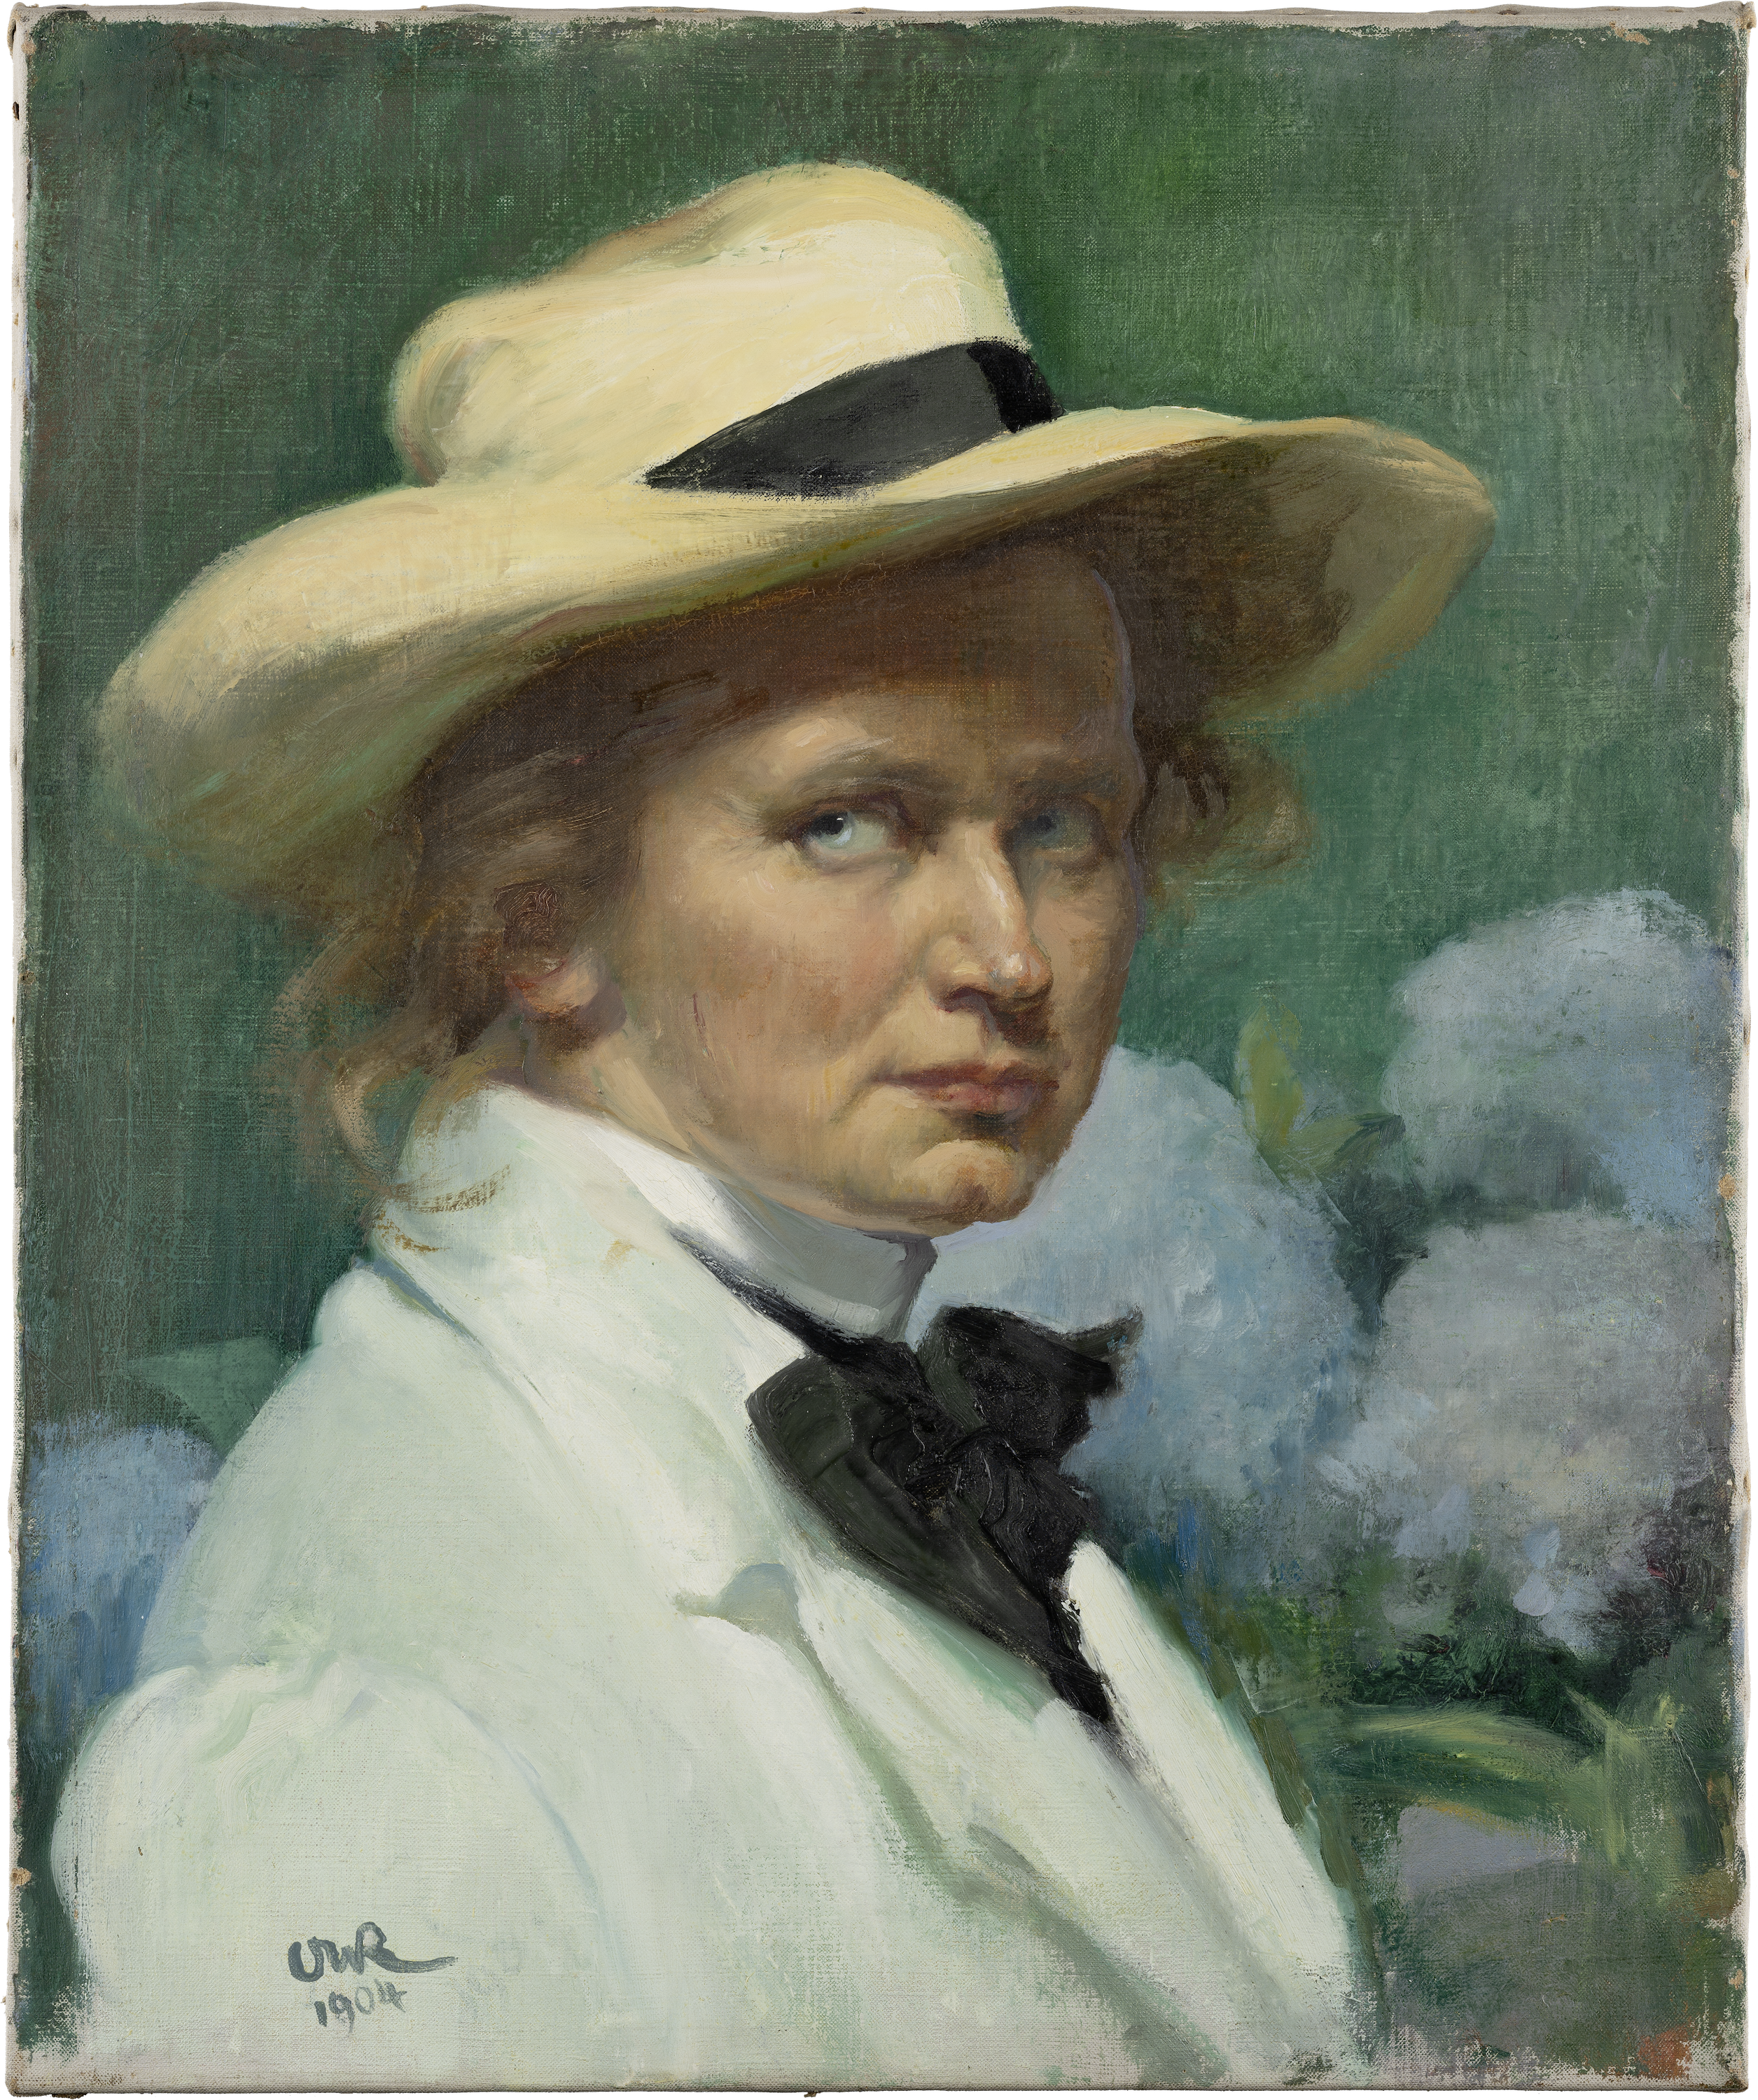 戴帽子的自畫像 by Ottilie W. Roederstein - 1904年 - 55.3 x 46.1 厘米 